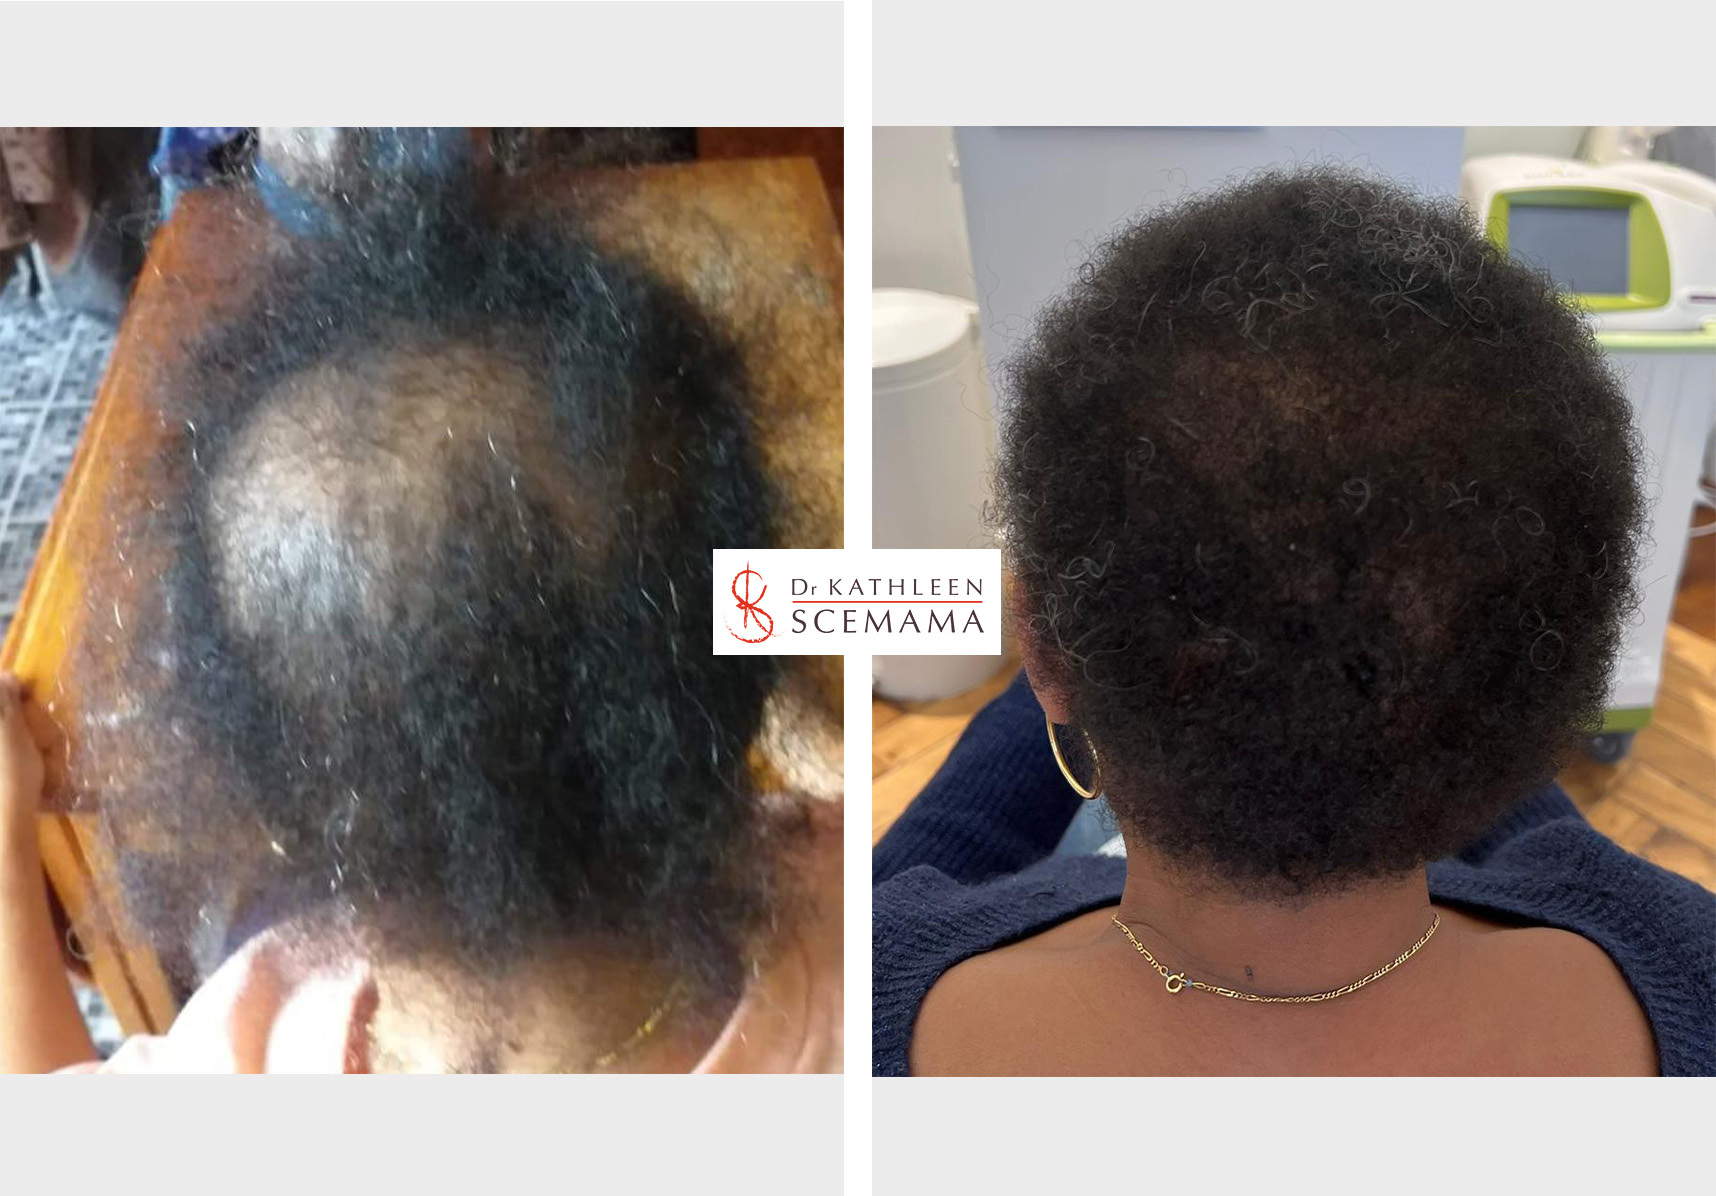 Avant - Après dermatologie des cheveux | Dermatologie médical du cuir chevelu | Dr Kathleen Scemama